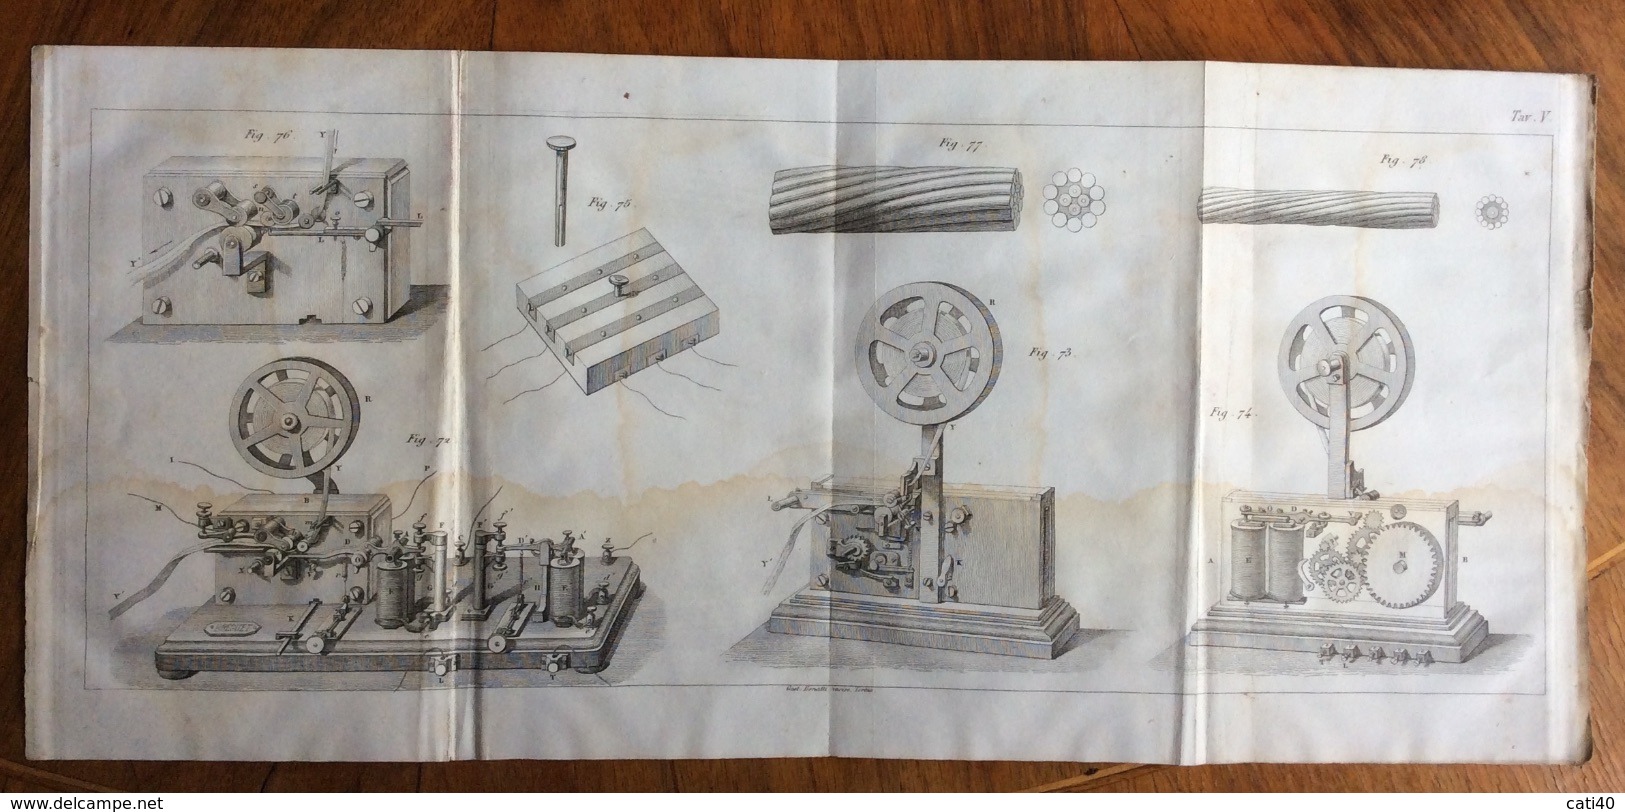 MATTEUCCI TELEGRAFIA ELETTRICA  UNIONE TIPOGRAFICA EDITRICE TORINO 1861 - Libri Antichi